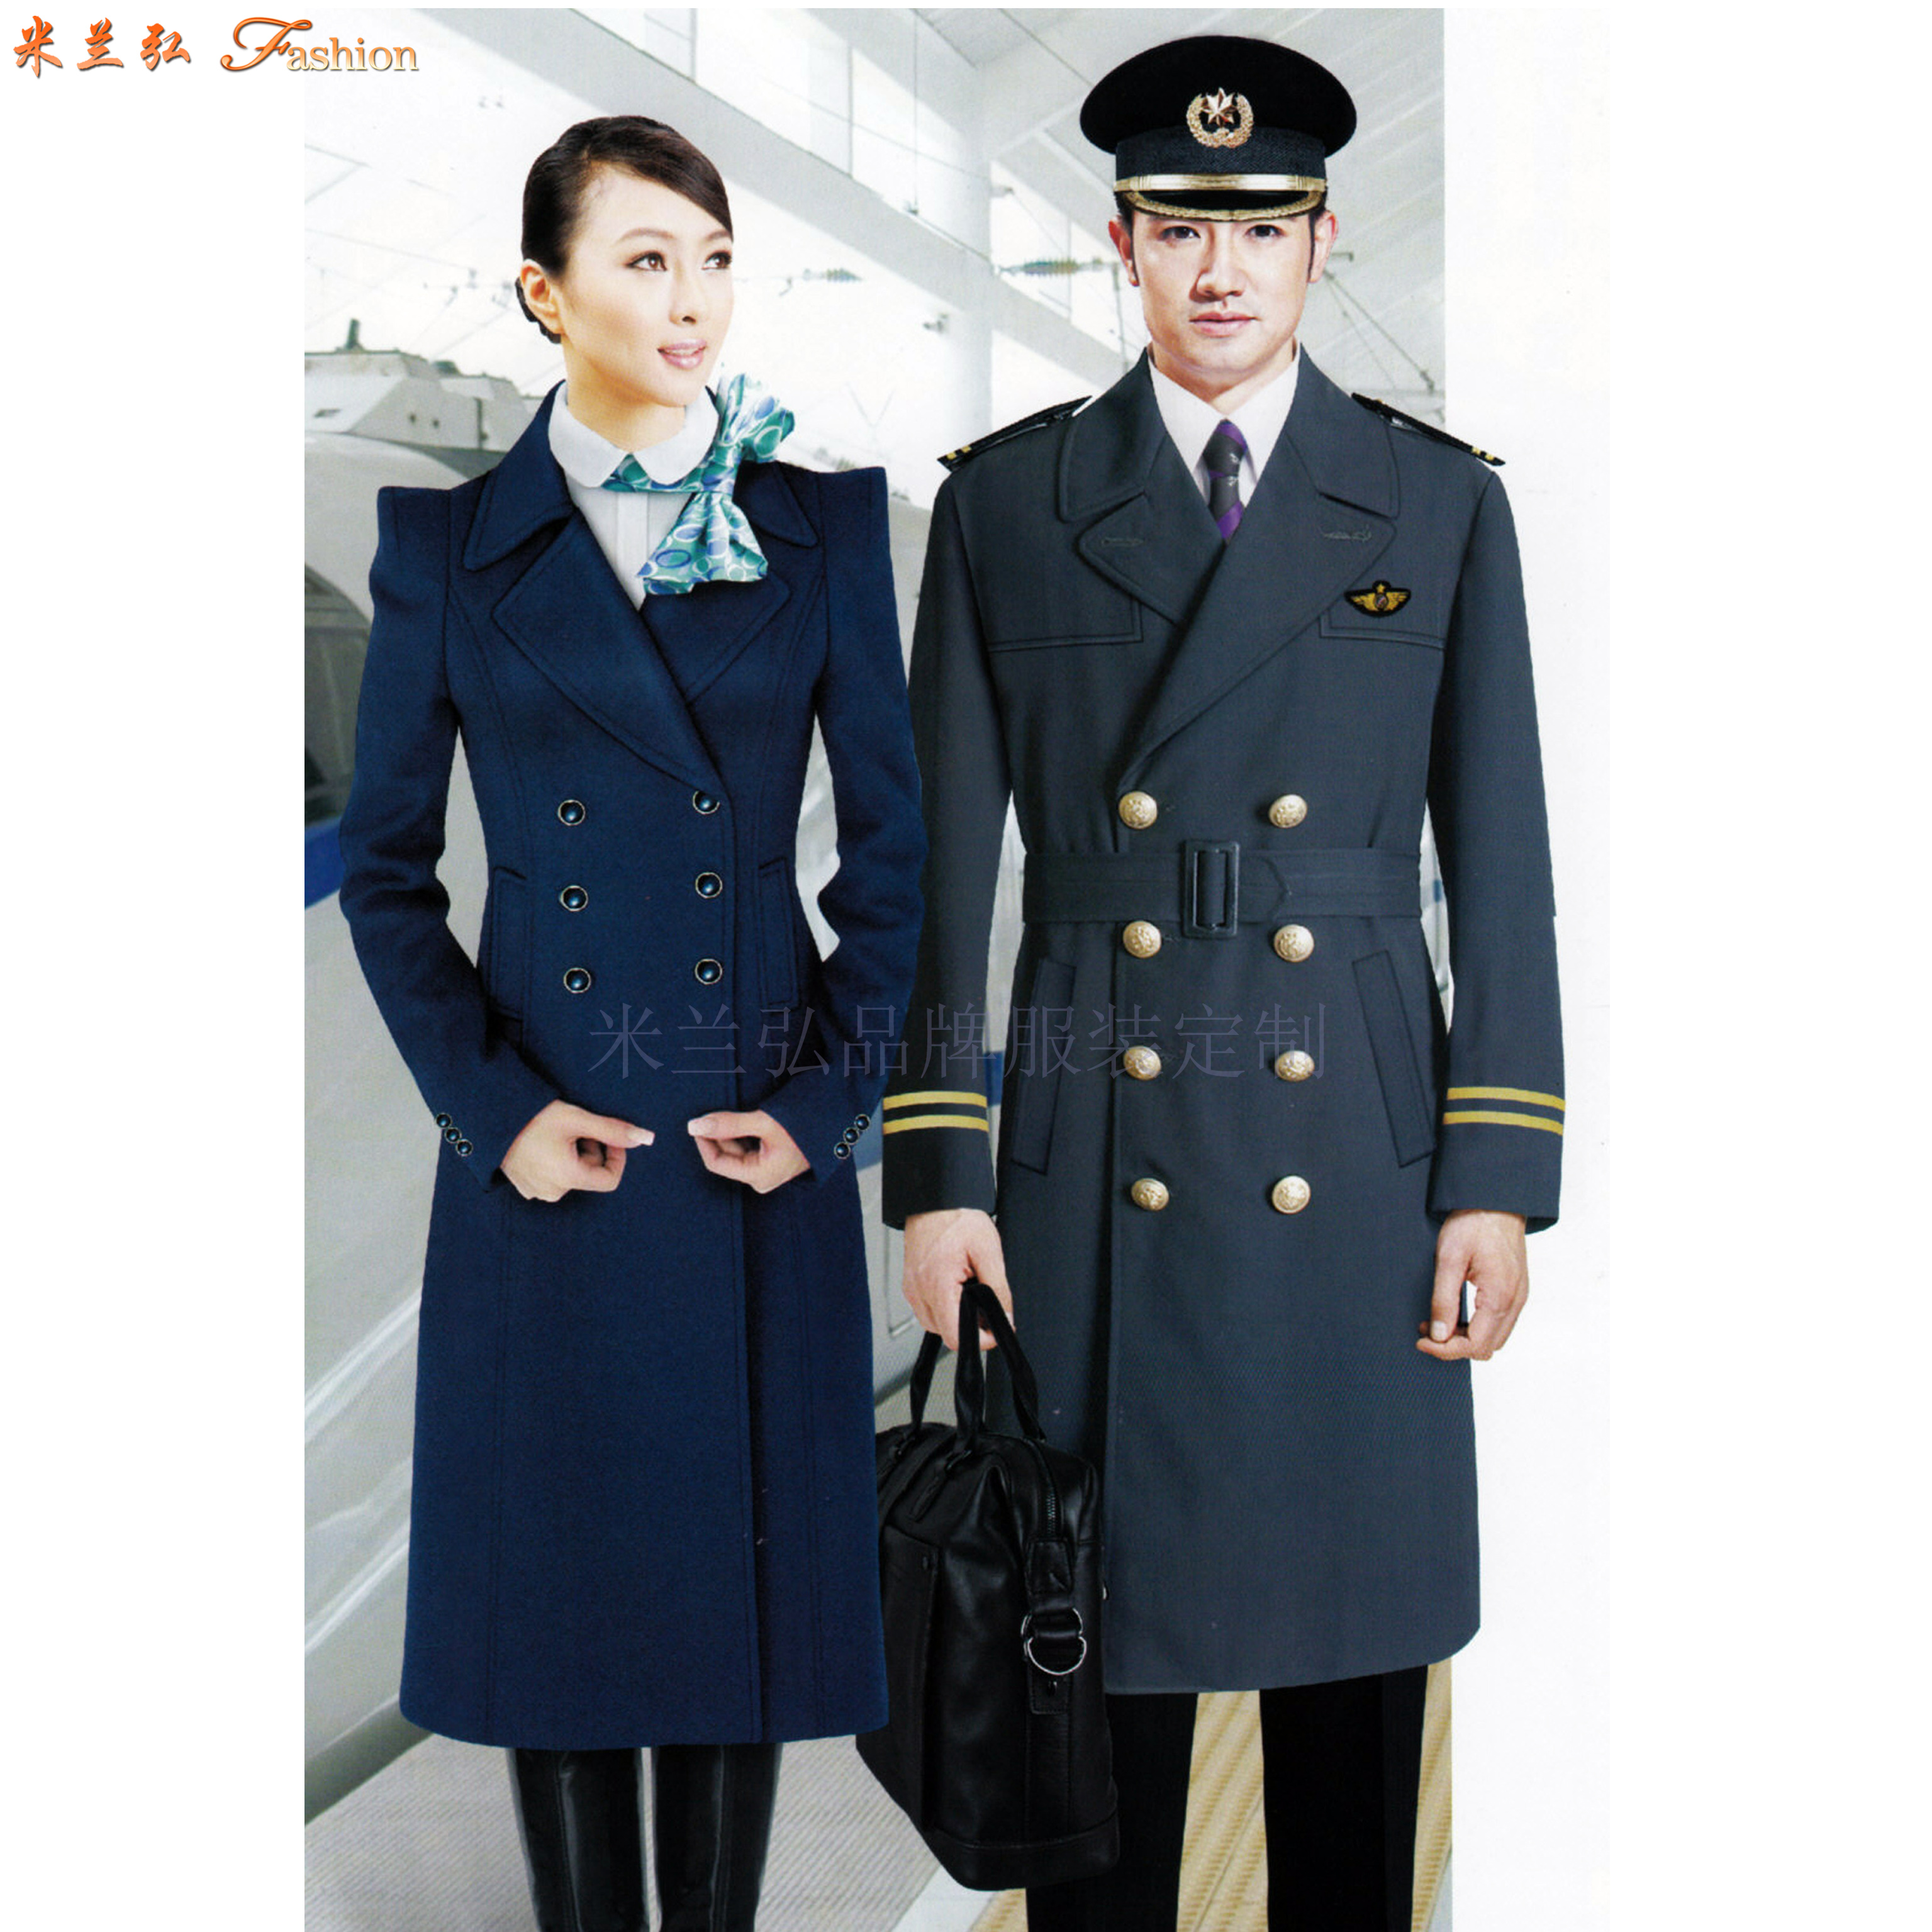 「航空高鐵大衣」采購批發市場優質高鐵大衣價格品牌廠商_米蘭弘-2